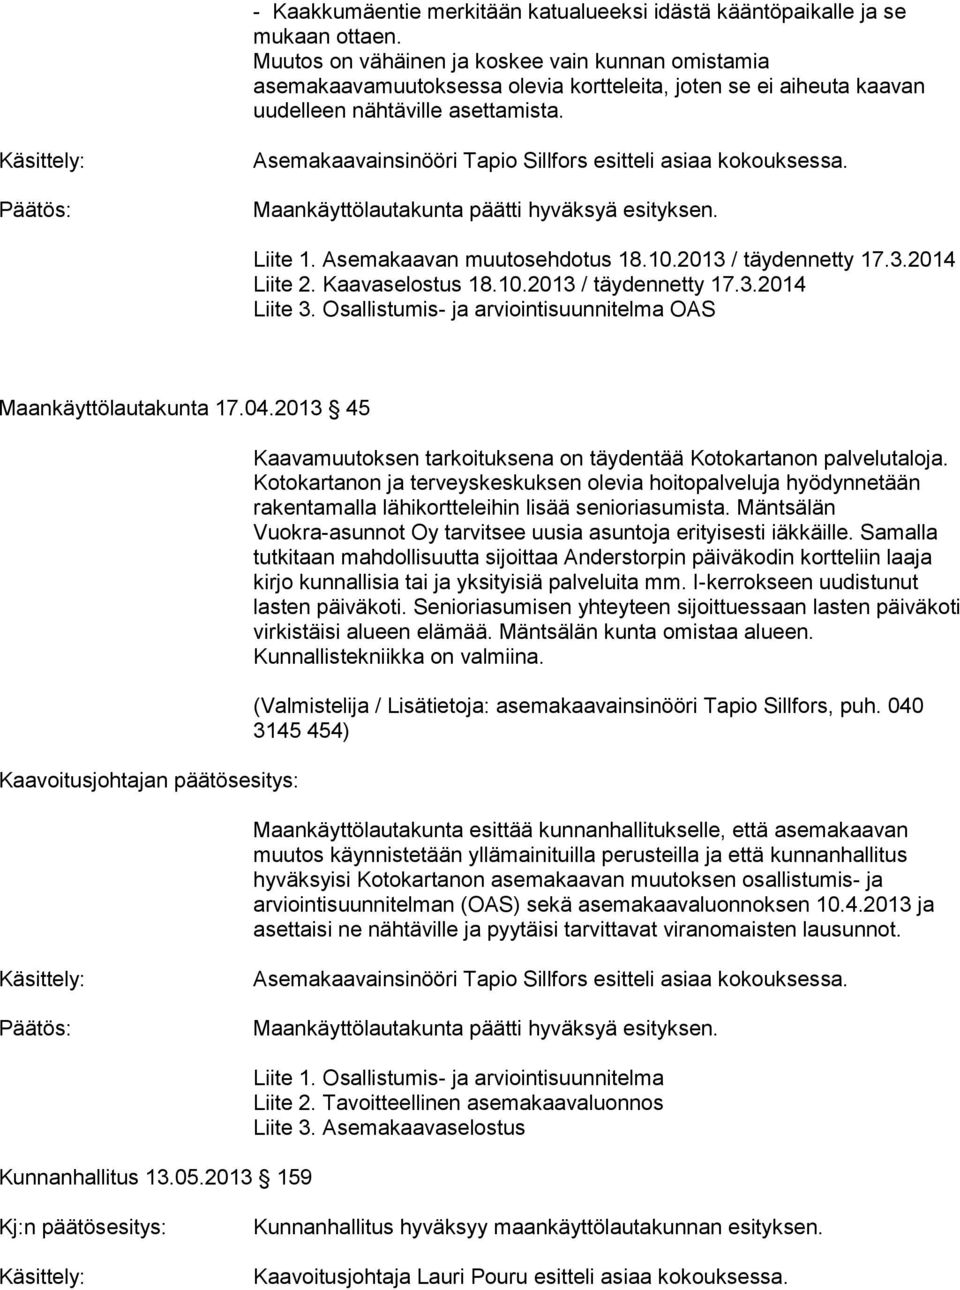 Asemakaavainsinööri Tapio Sillfors esitteli asiaa kokouksessa. Liite 1. Asemakaavan muutosehdotus 18.10.2013 / täydennetty 17.3.2014 Liite 2. Kaavaselostus 18.10.2013 / täydennetty 17.3.2014 Liite 3.